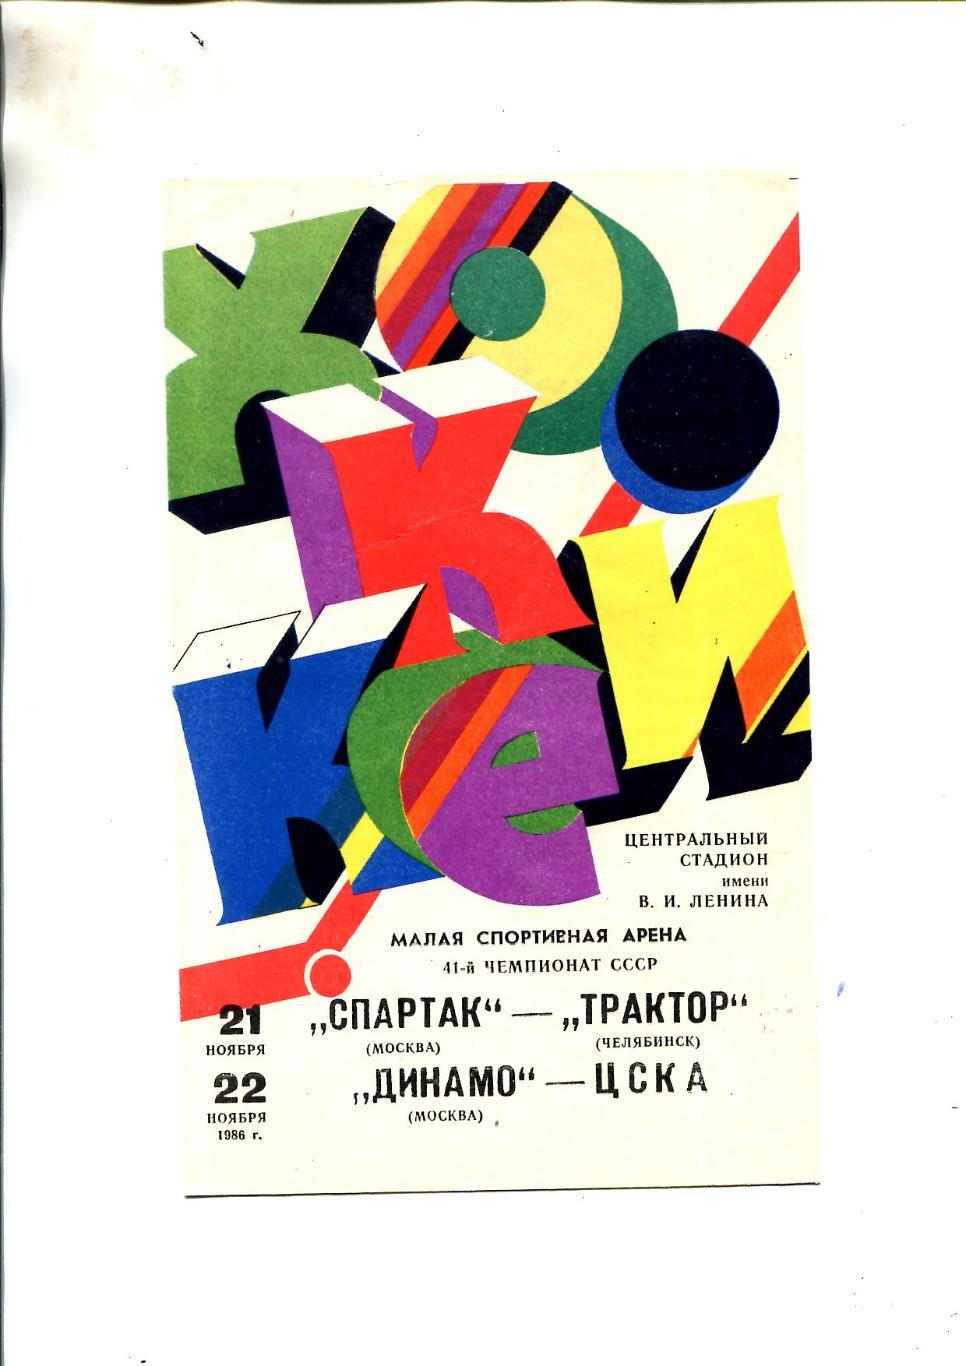 Динамо - ЦСКА, Спартак - Трактор - 1986.